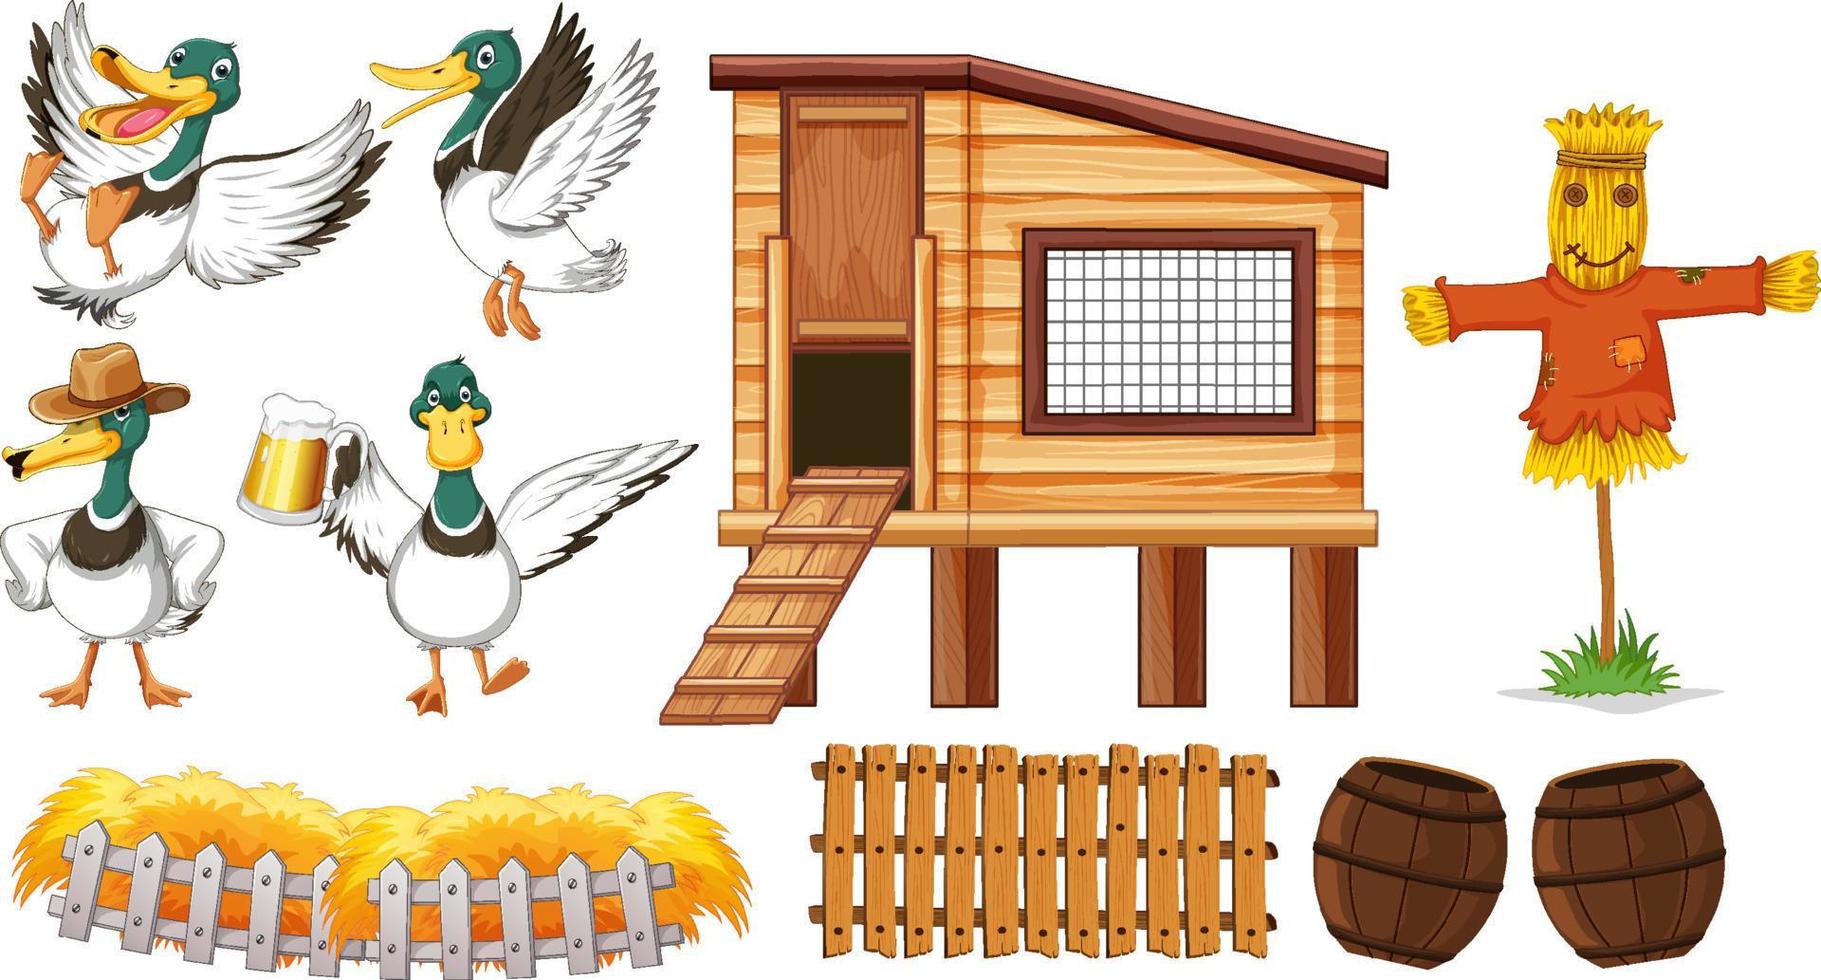 Farm objects set with wild ducks cartoon vector